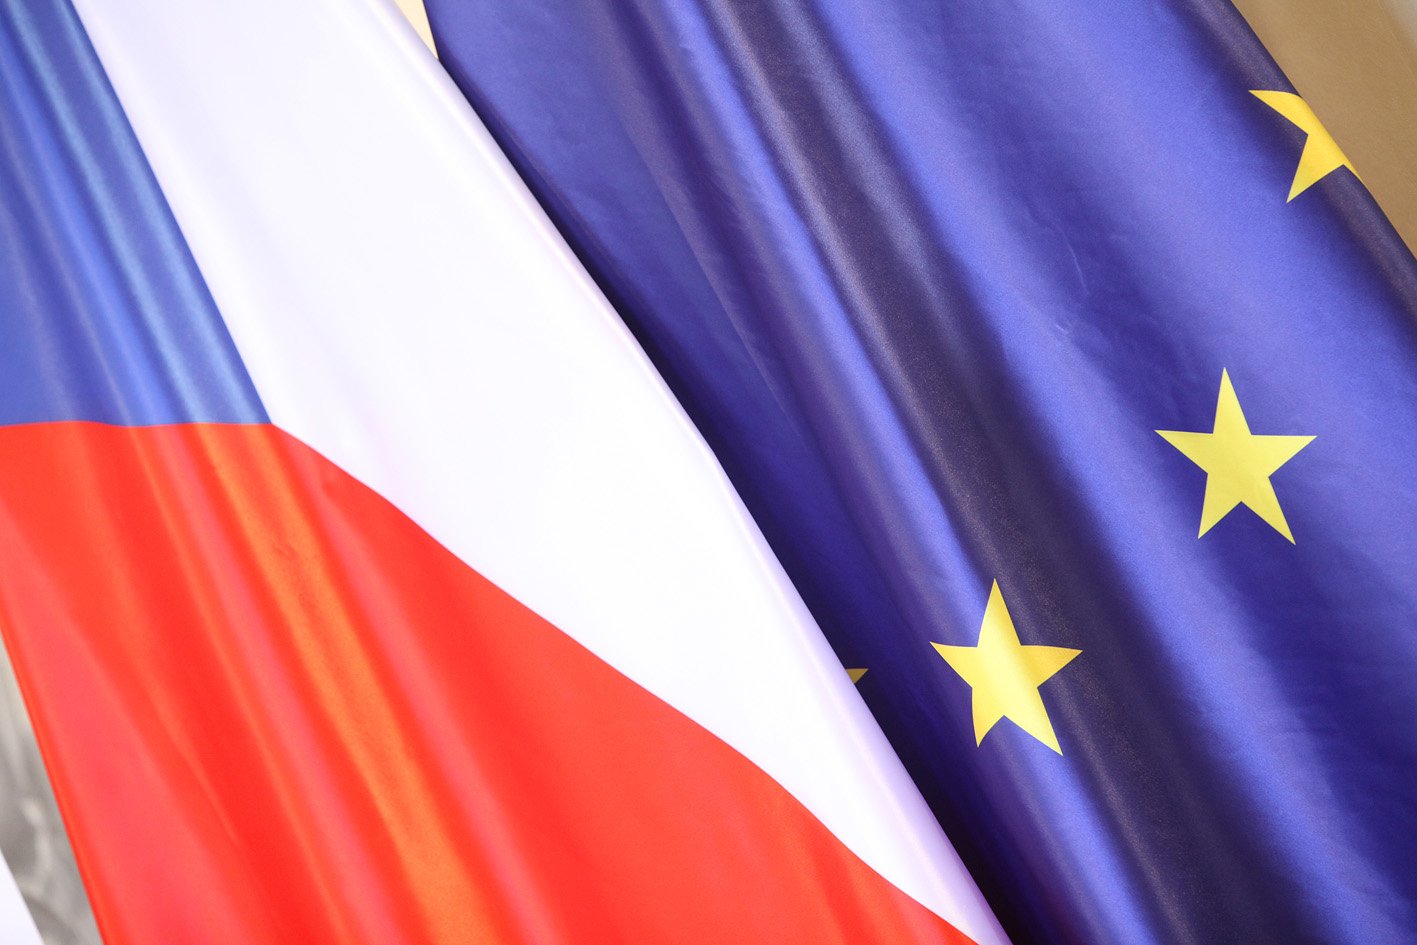 Česká republika slaví 20 let v EU: Kandidáti do Evropského parlamentu koalice SPOLU zdůrazňují význam evropské spolupráce a vyzývají k účasti v nadcházejících volbách